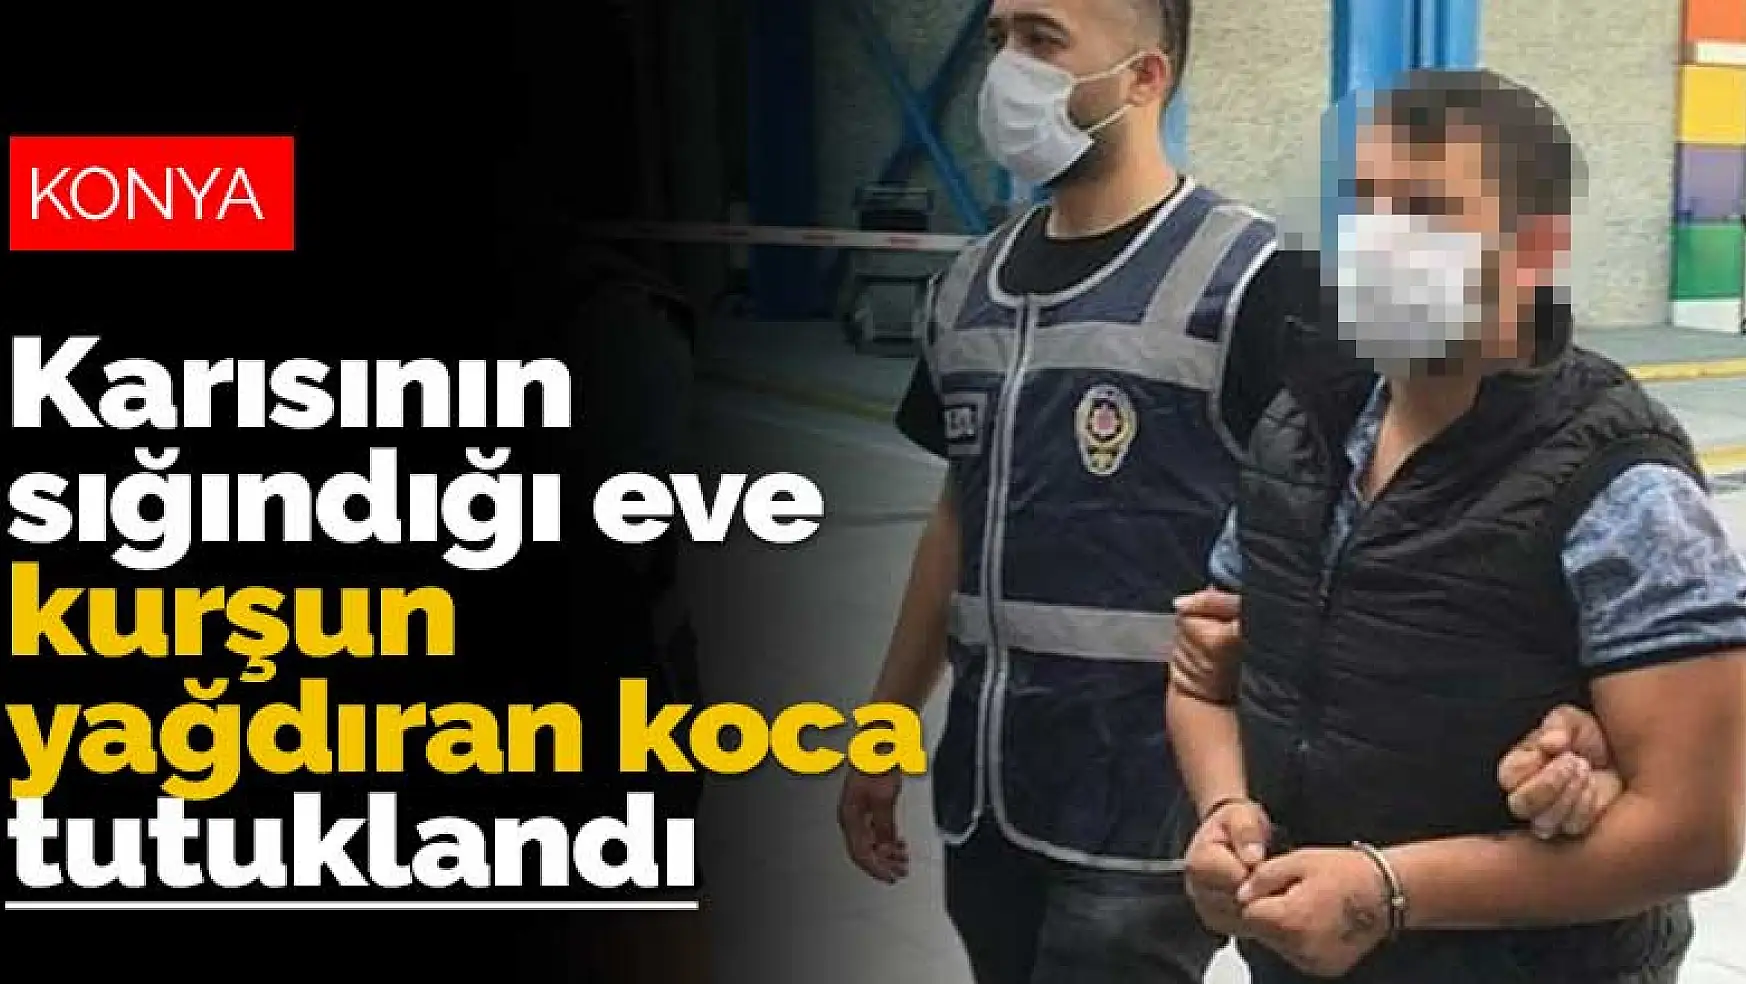 Konya'da karısına sinirlenip kayınvalidesinin evine kurşun yağdıran koca tutuklandı